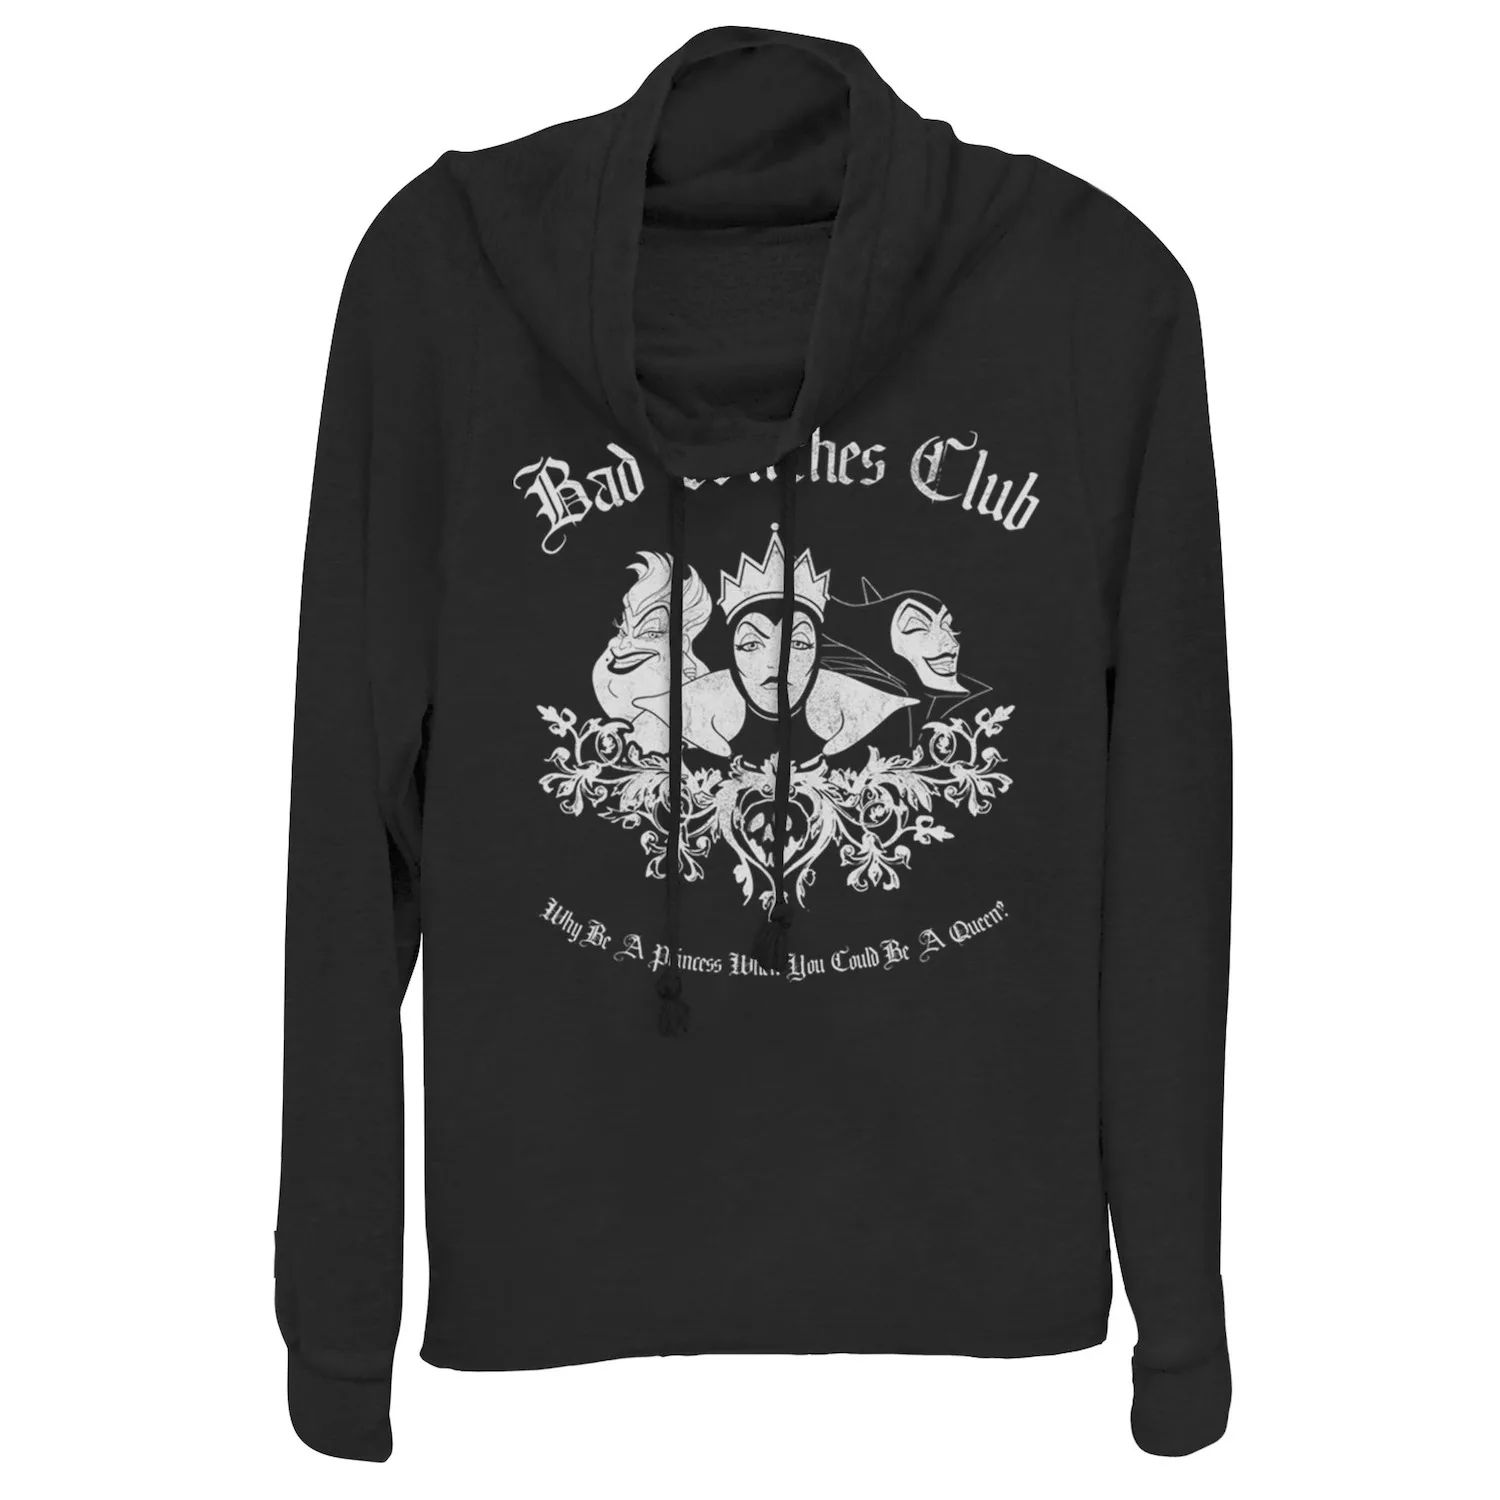 Пуловер с воротником-хомутом для групповых снимков Disney's Villains Bad Witches Club Licensed Character